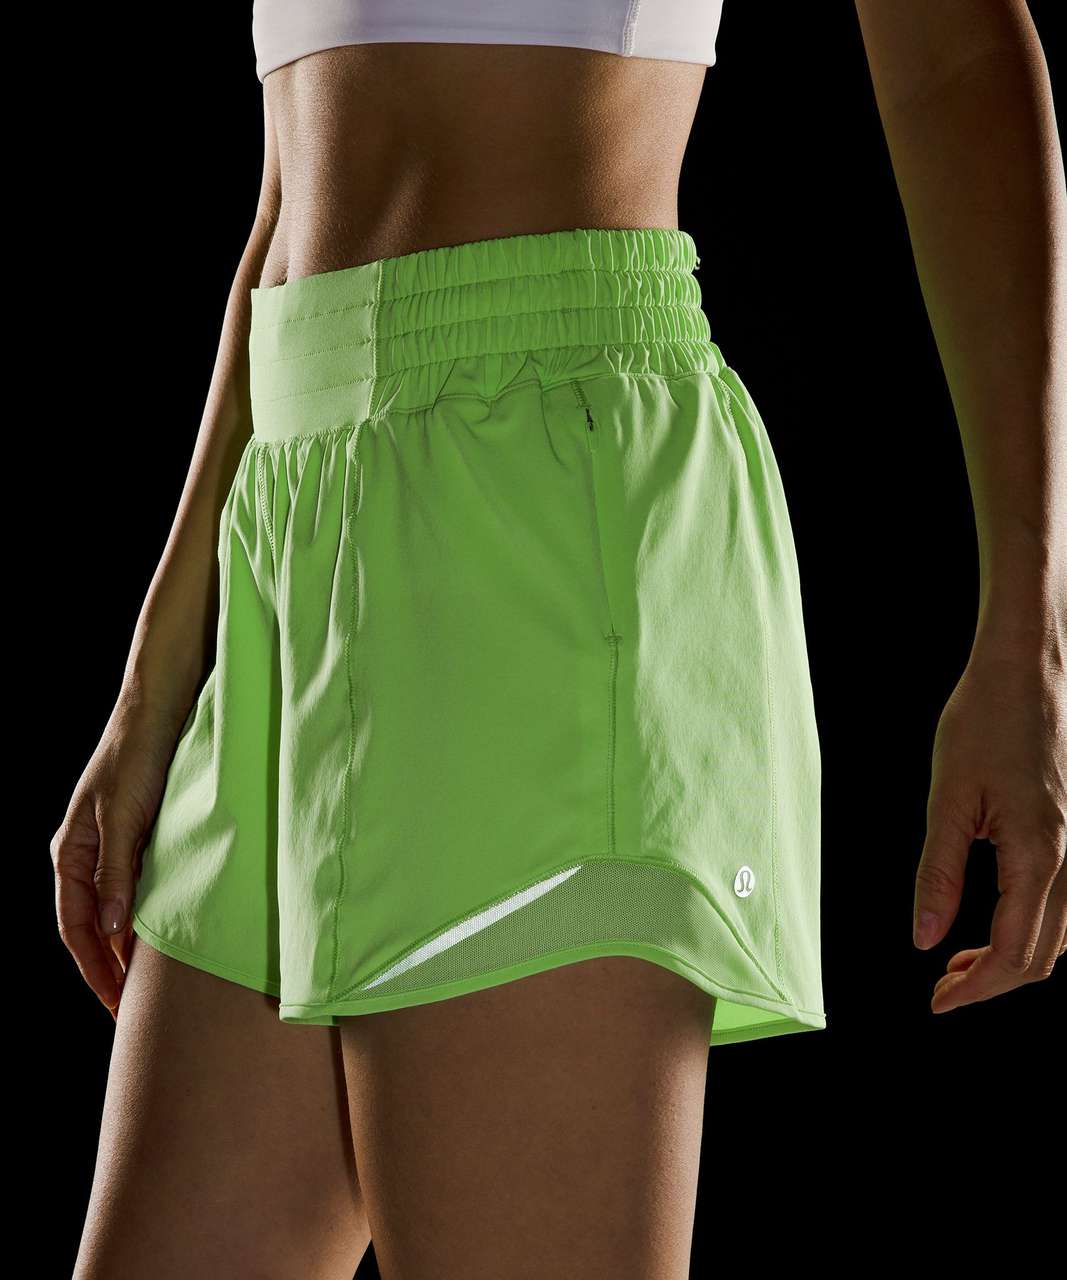 Lululemon Hotty Hot Shorts Green Size 6 - $105 - From Ashley